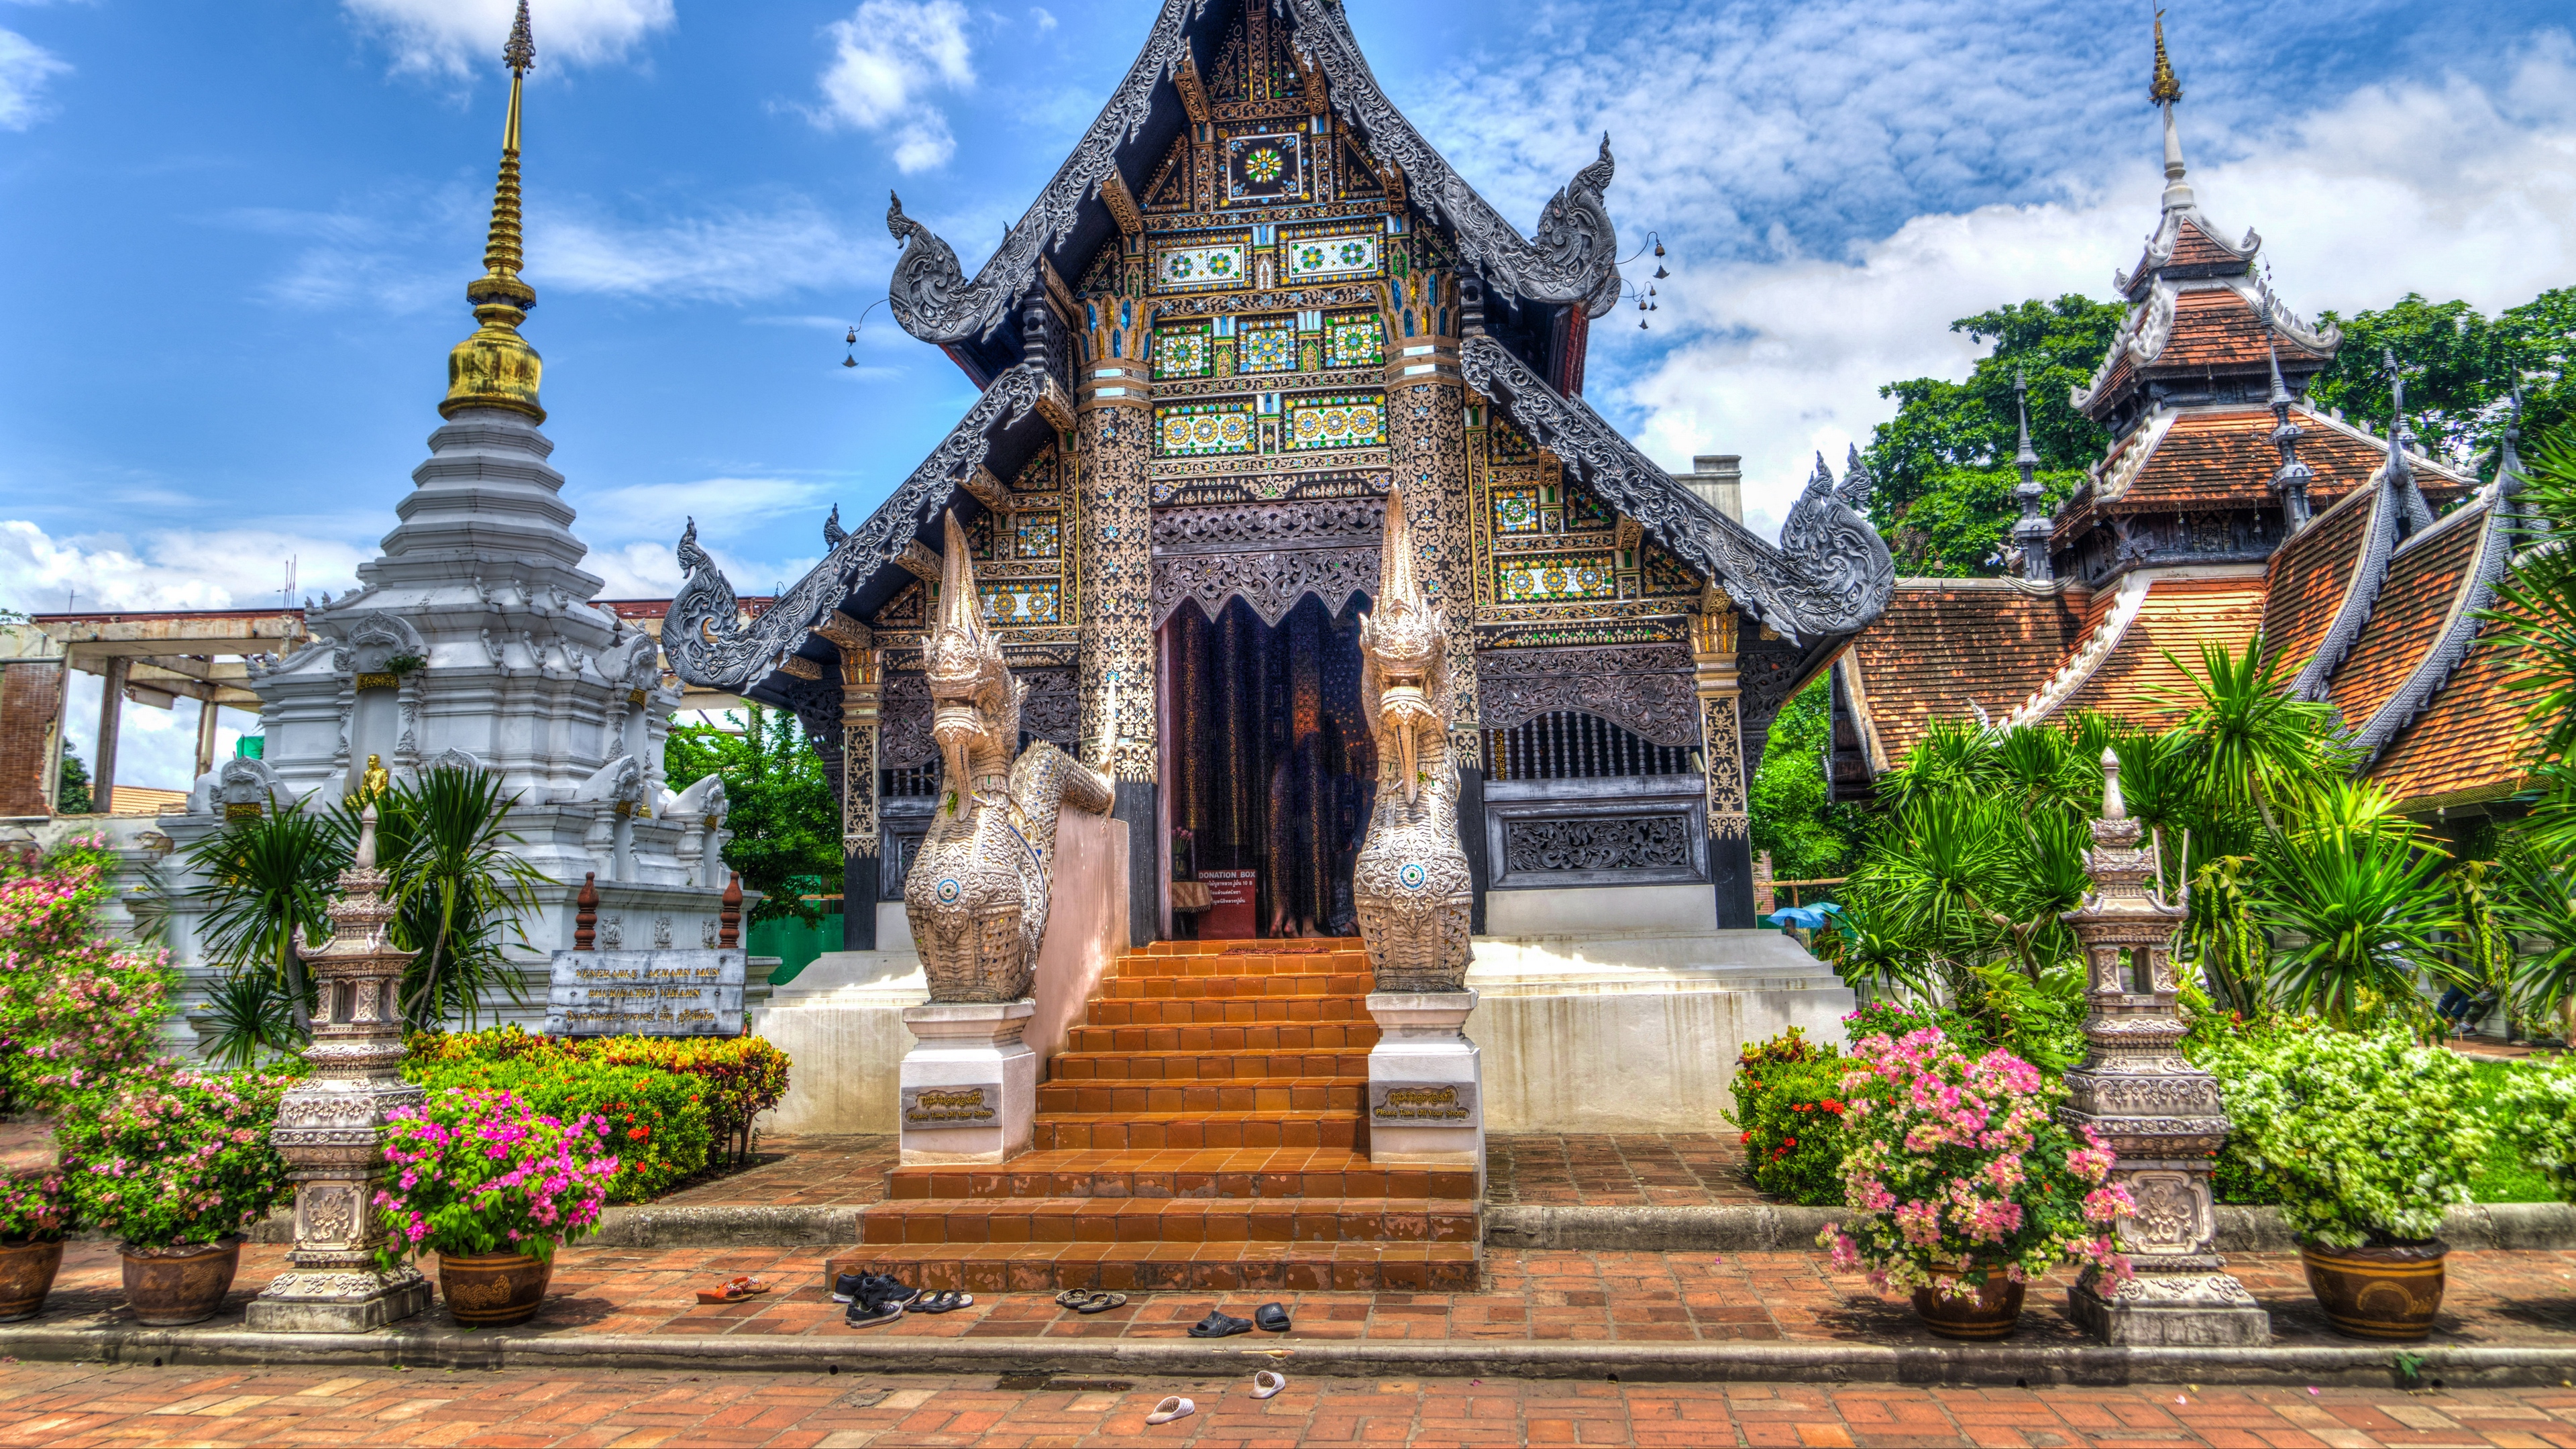 thailand temple chiang mai hdr 4k 1538065718 - thailand, temple, chiang mai, hdr 4k - Thailand, Temple, chiang mai